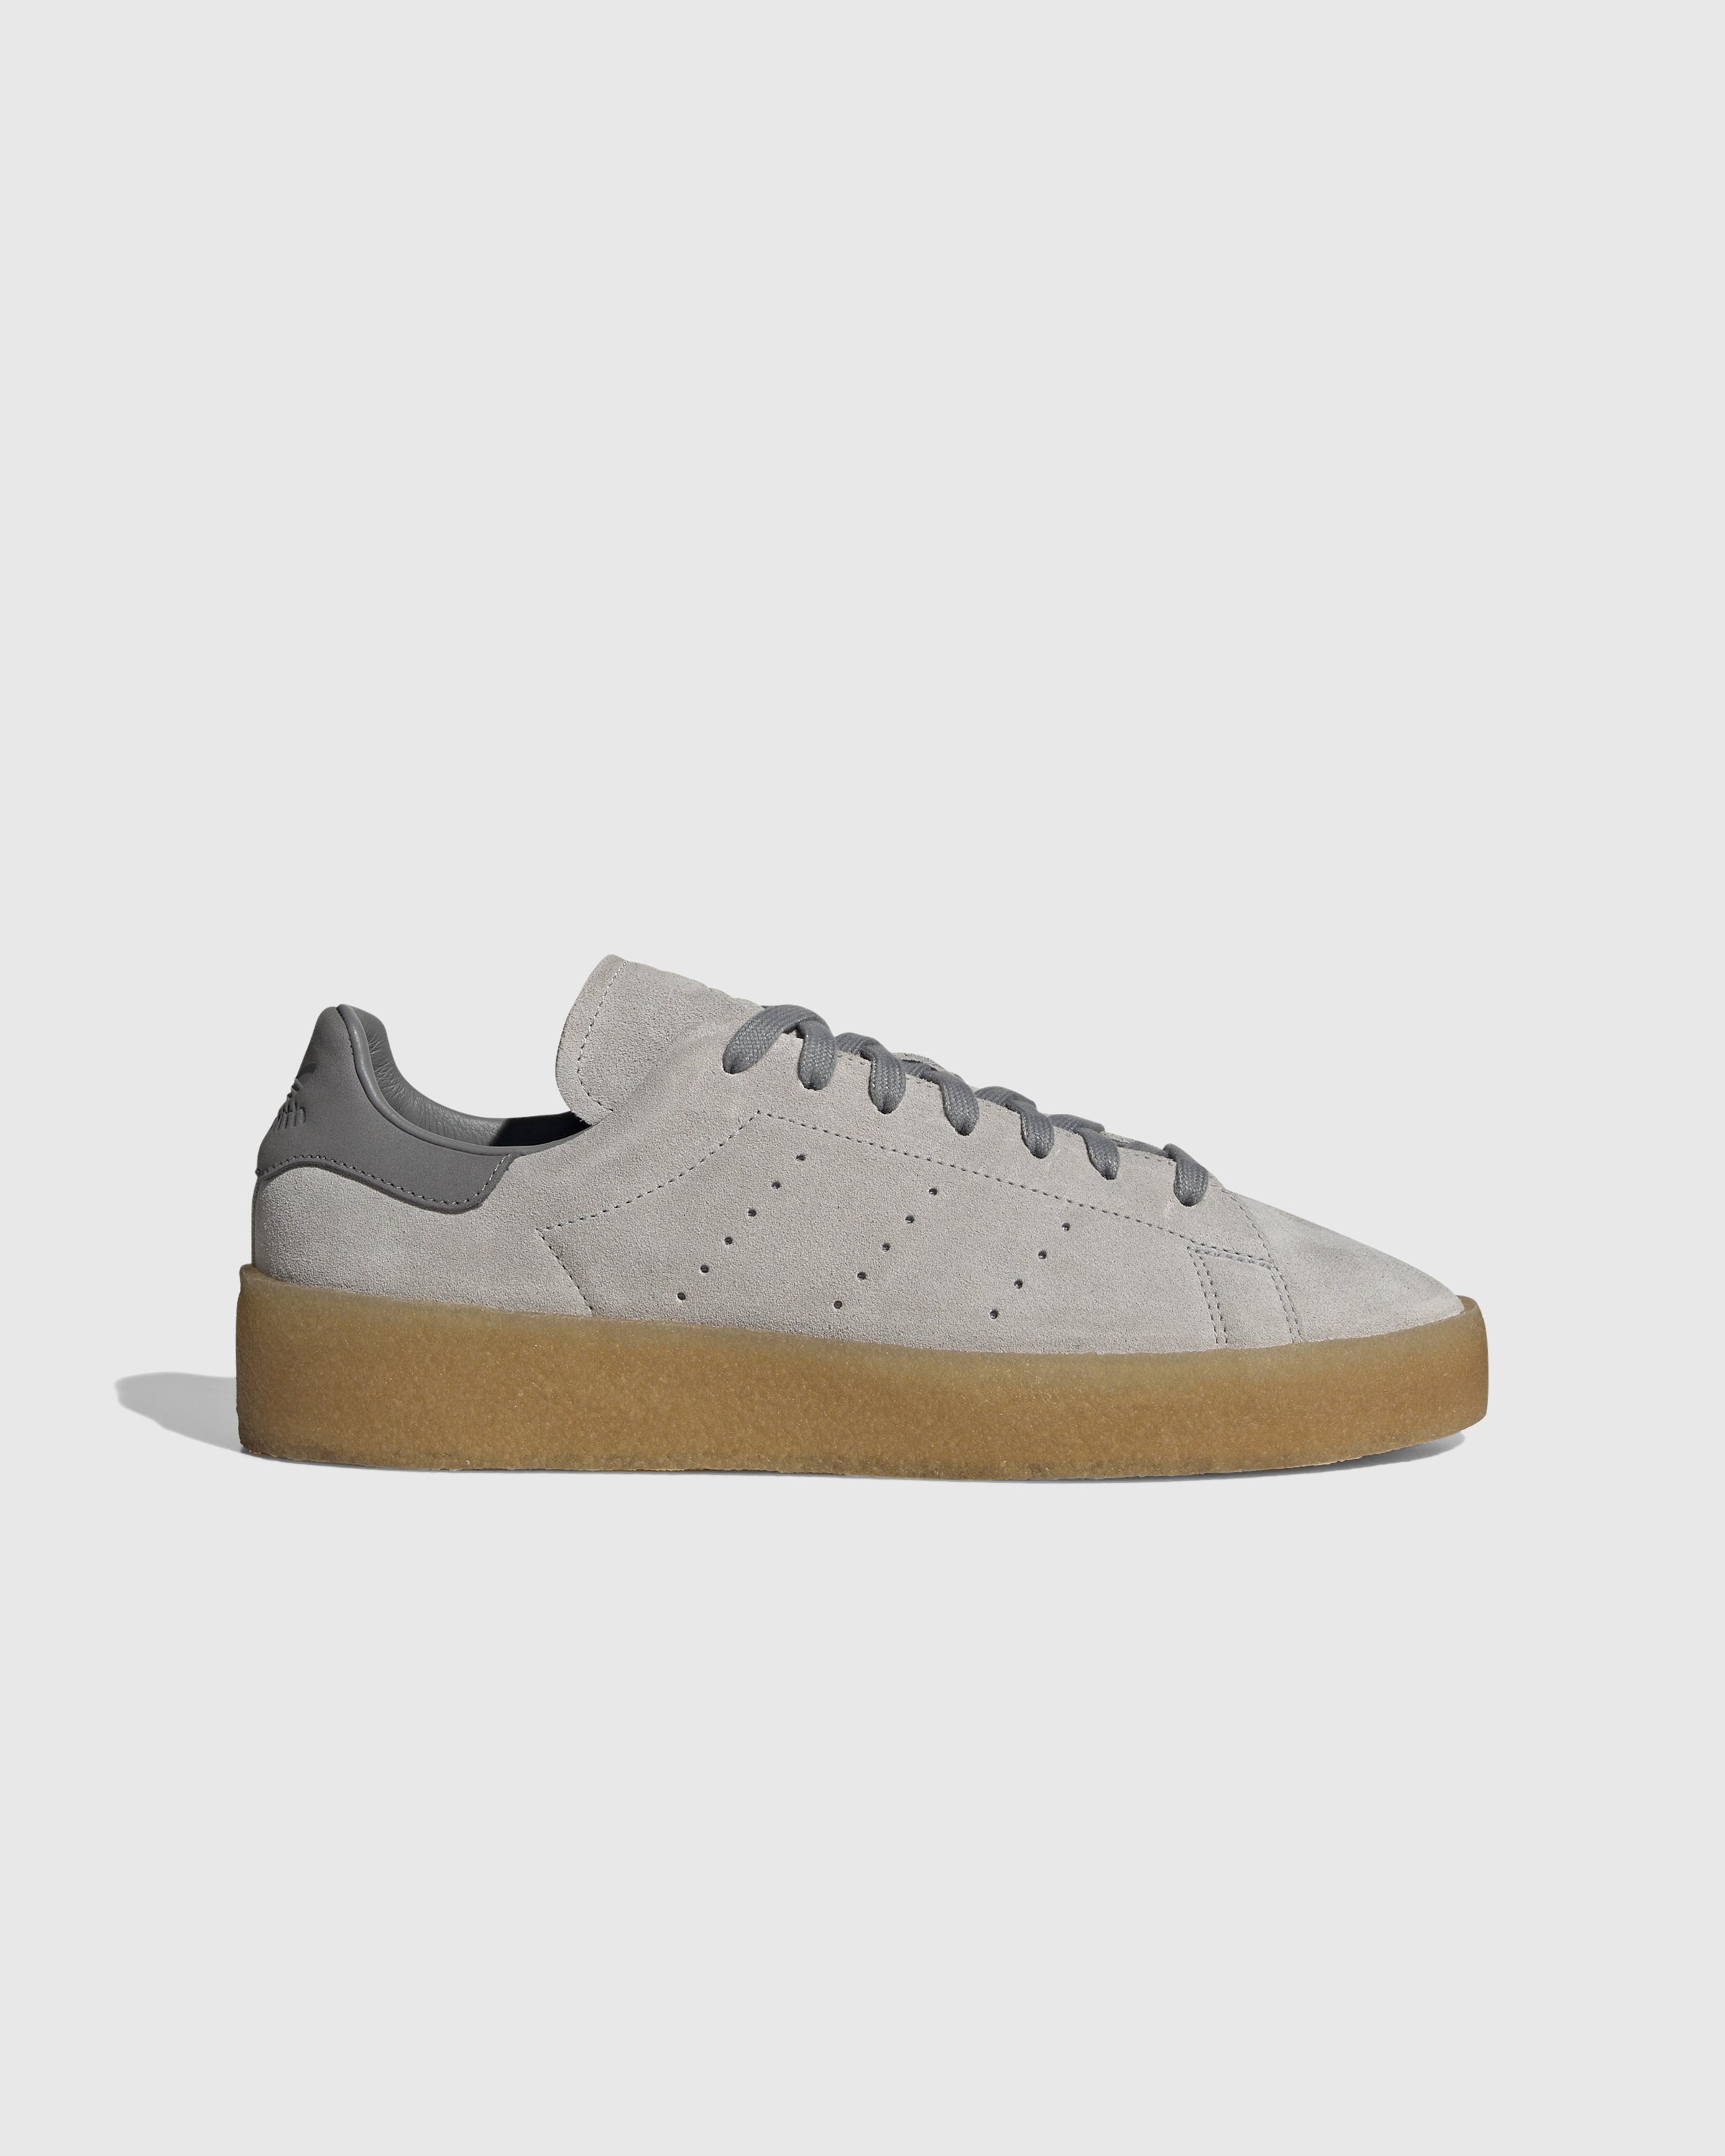 Adidas - Stan Smith Crepe Grey - Footwear - Grey - Image 1